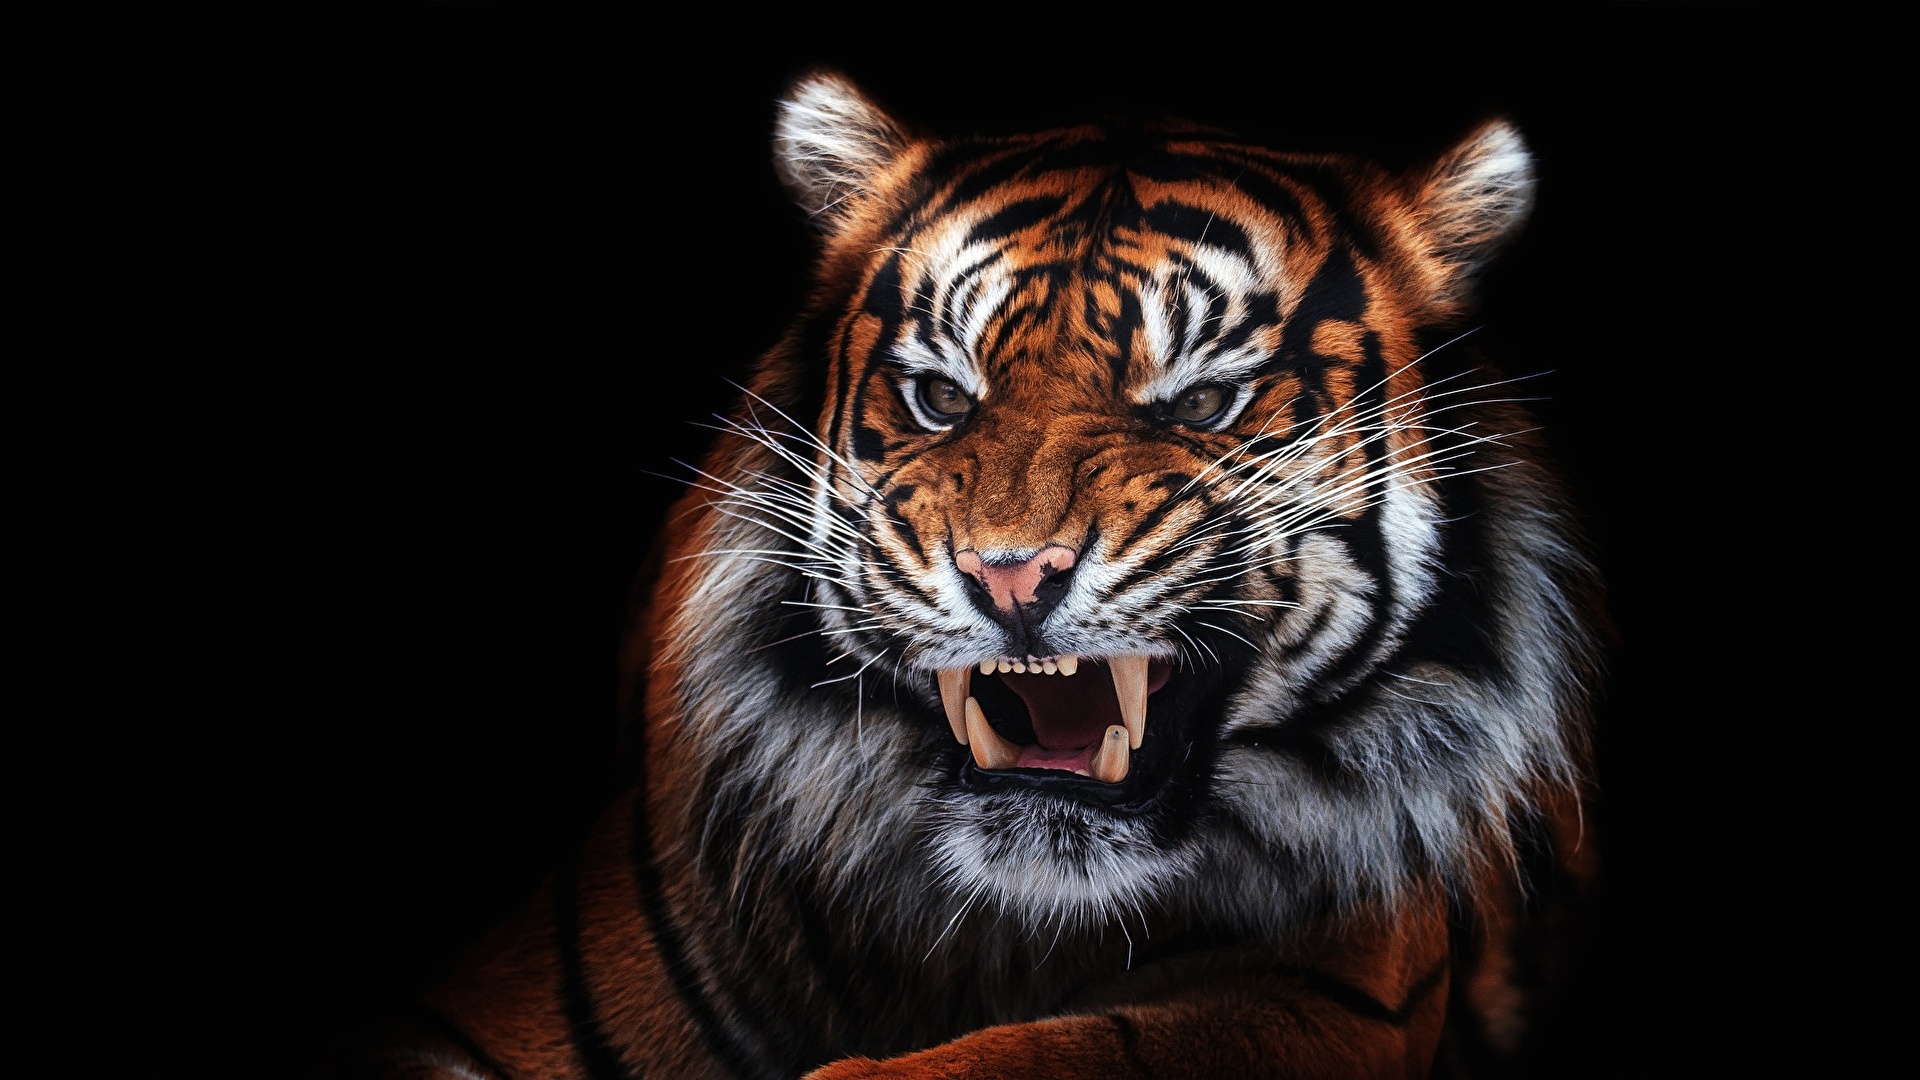 Hd Wallpaper Of Aggressive Tiger - HD Wallpaper 